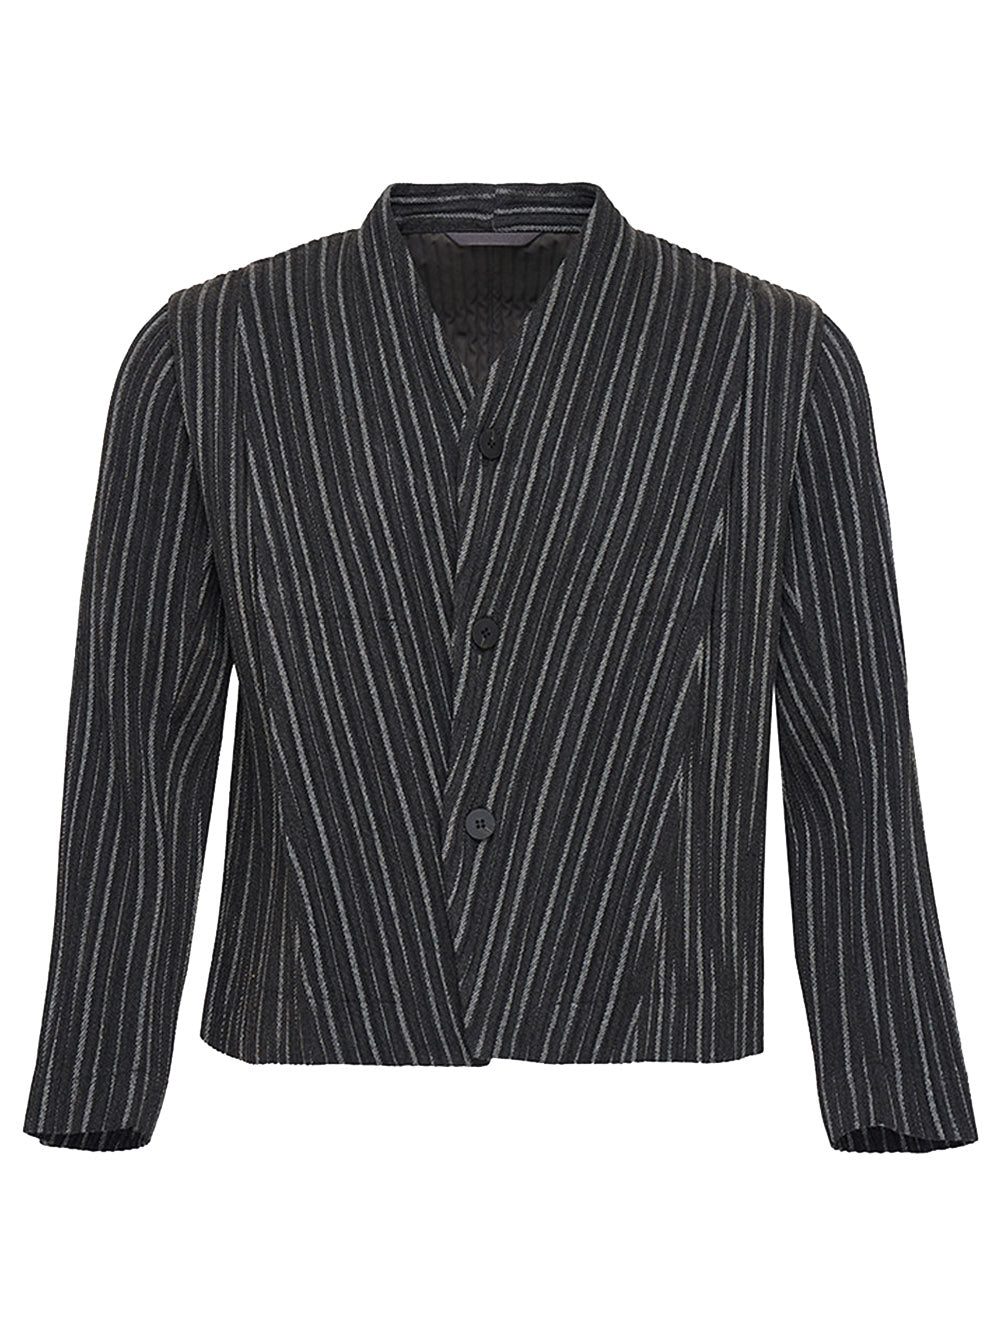 HOMME PLISSE ISSEY MIYAKE-Tweed Pleats Jacket-Black-1